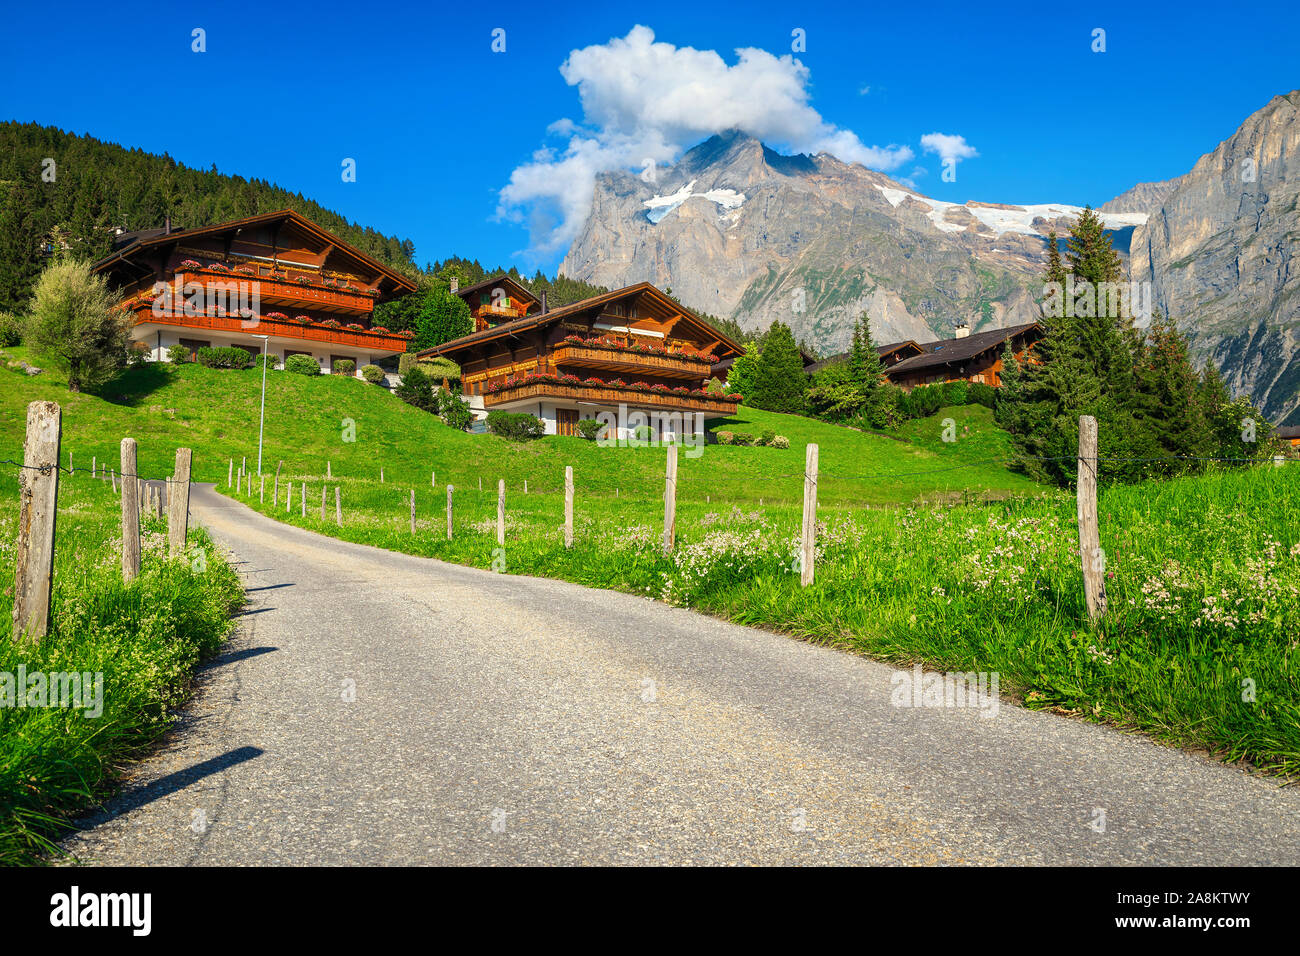 Amazing mountain resort alpine traditionnelle avec des maisons en bois et de hautes montagnes enneigées en arrière-plan, Grindelwald, Oberland Bernois, Suisse, Euro Banque D'Images